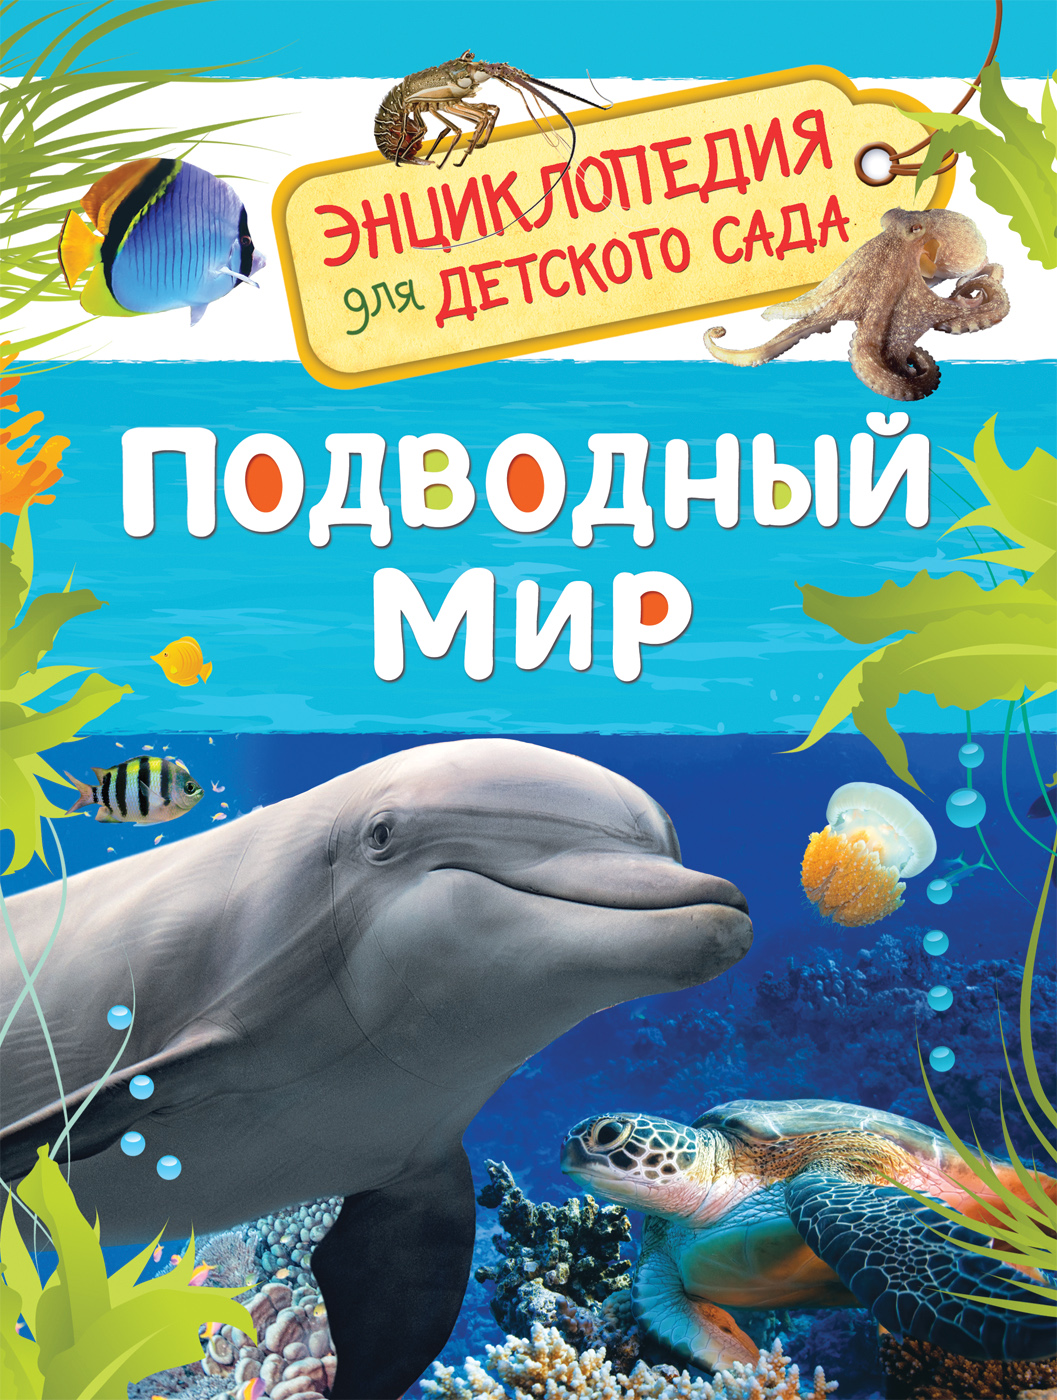 Книга 32825 "Подводный мир" Энциклопедия для детского сада Росмэн